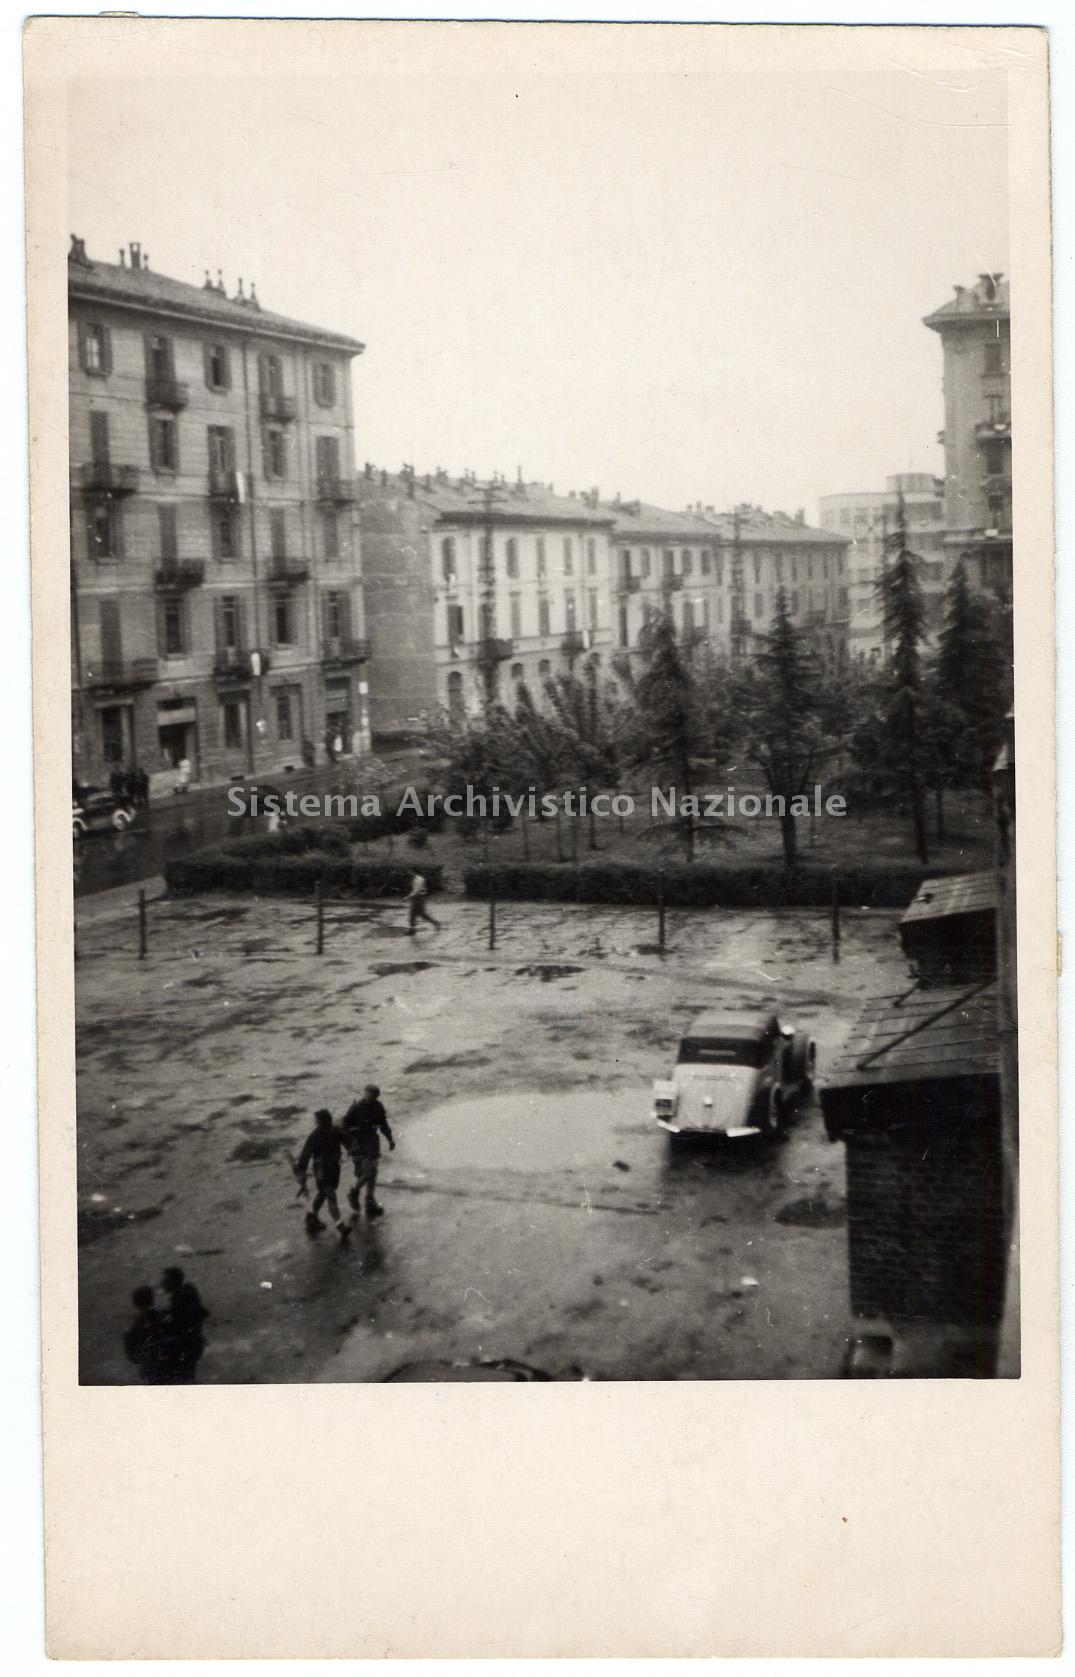 La Resistenza attraverso le fotografie del  commissario politico Mario Venanzi, INSMLI (1944-1945)